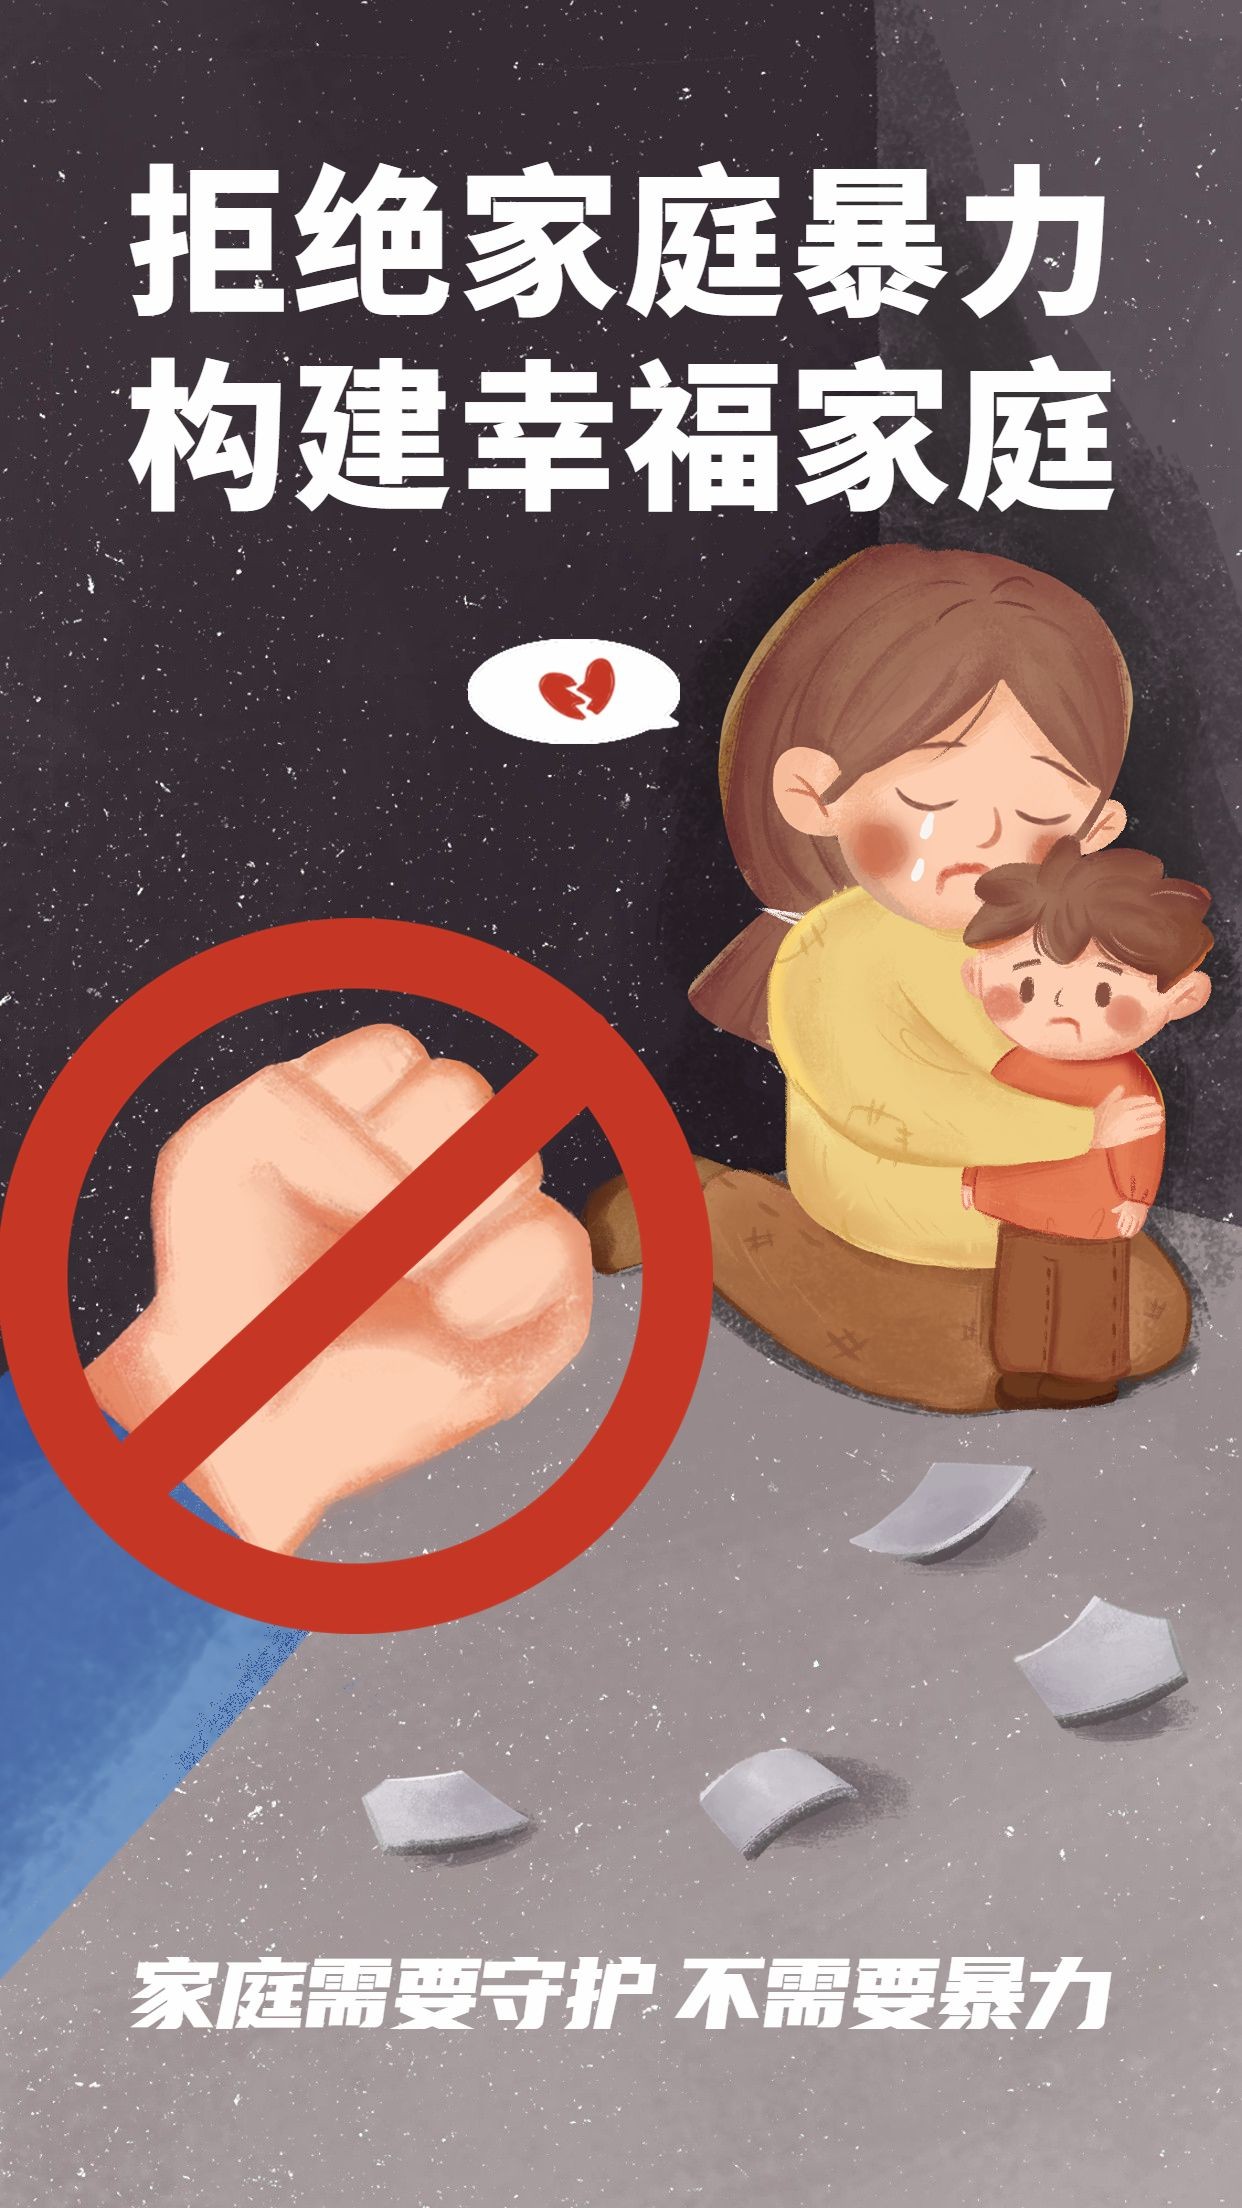 热点话题拒绝家暴保护儿童公益宣传手机海报